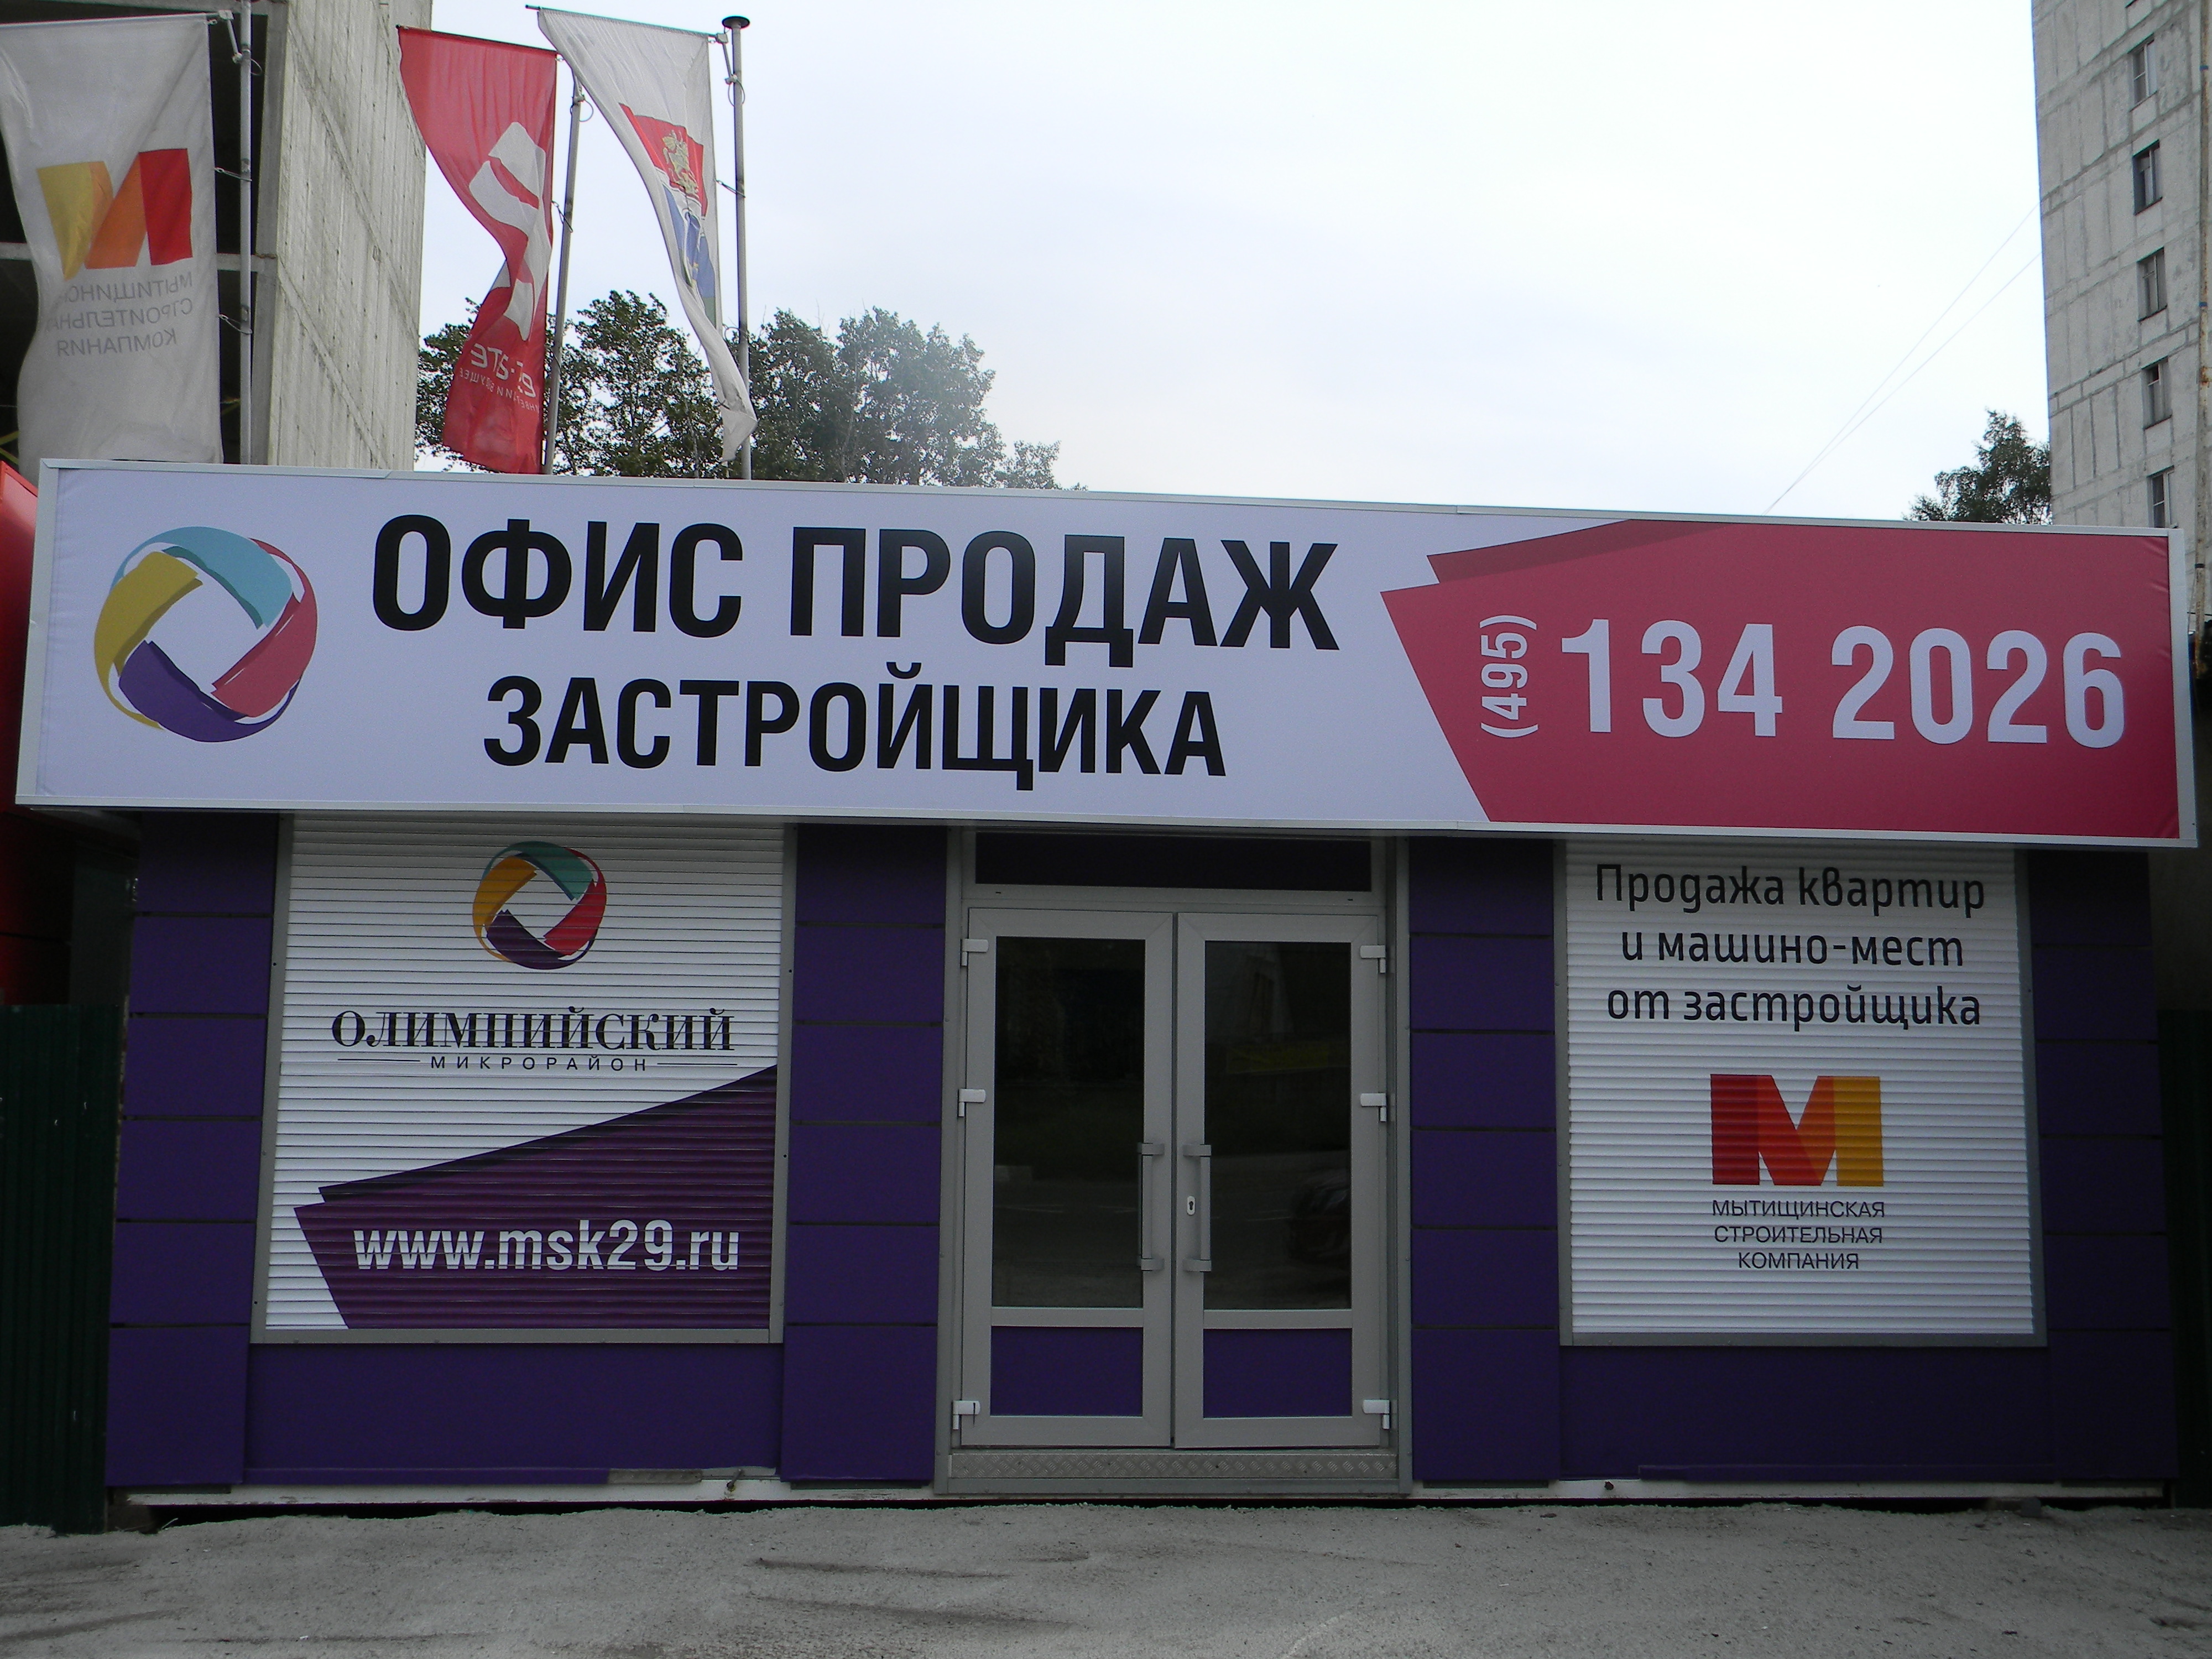 8 сентября — бесплатные ипотечные консультации от банка-партнера «Сбербанк России» в офисе продаж застройщика!